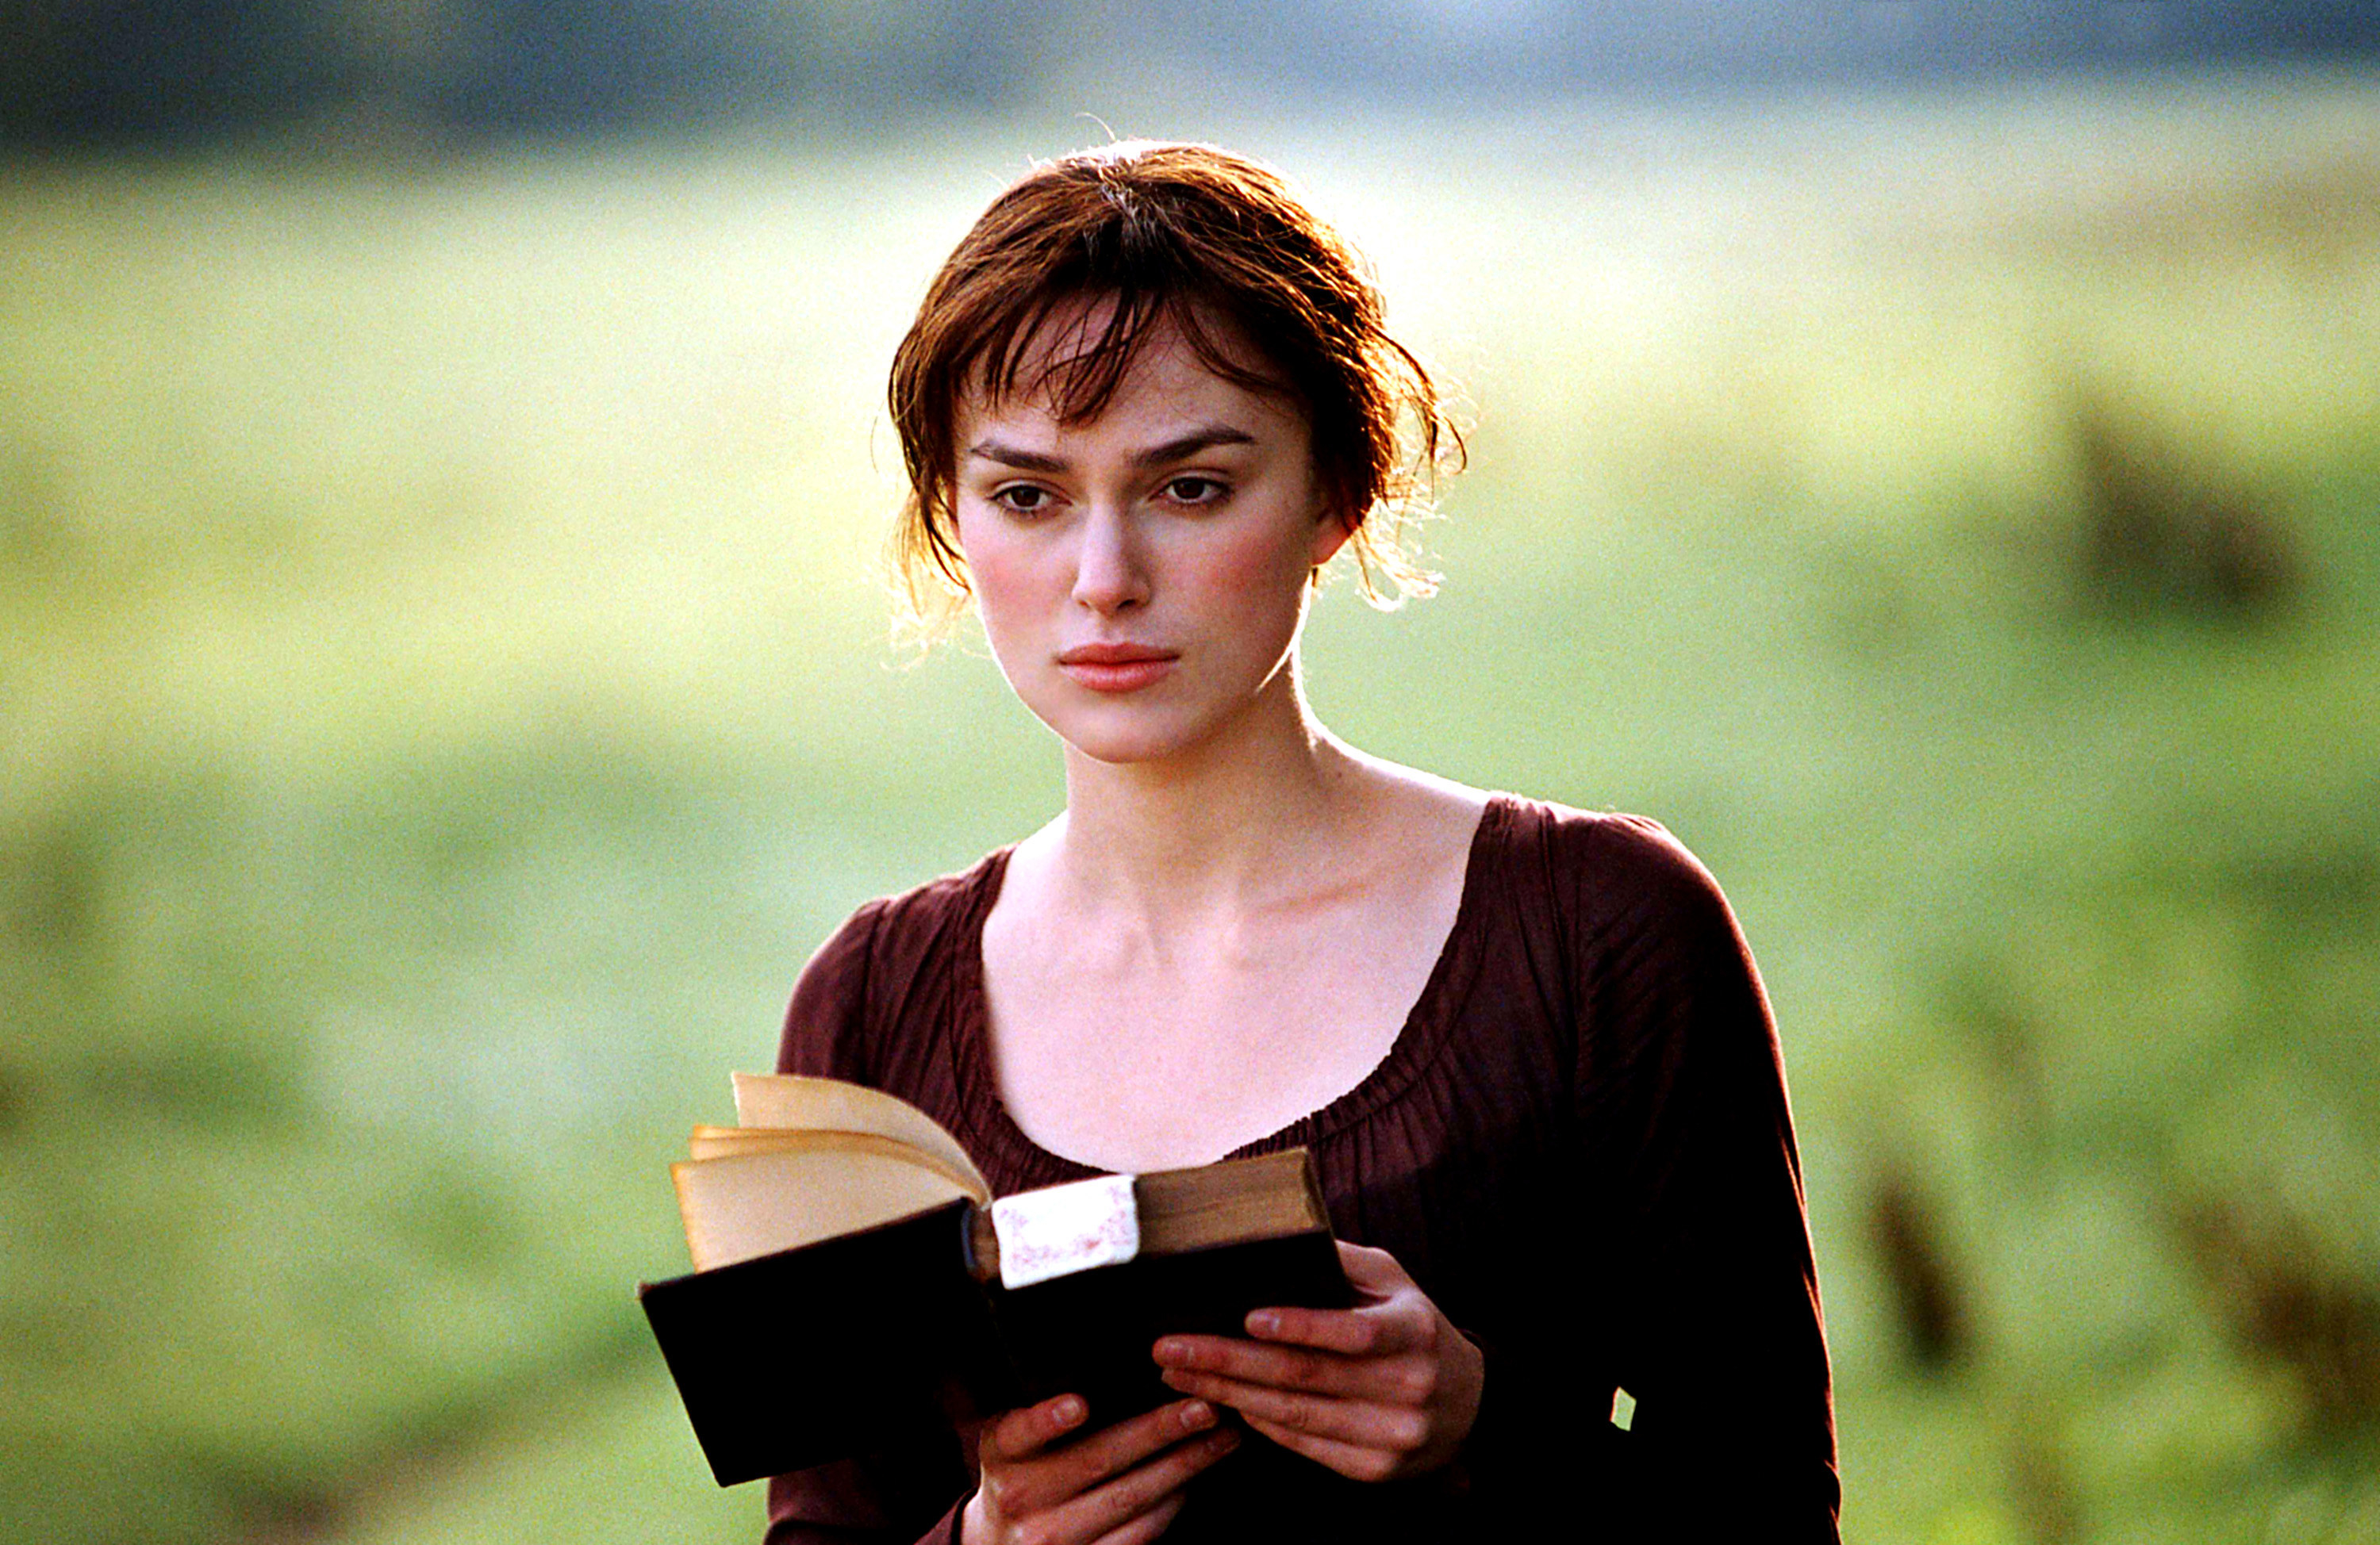 Keira Knightley as Elizabeth Bennet, walking through a field reading a book